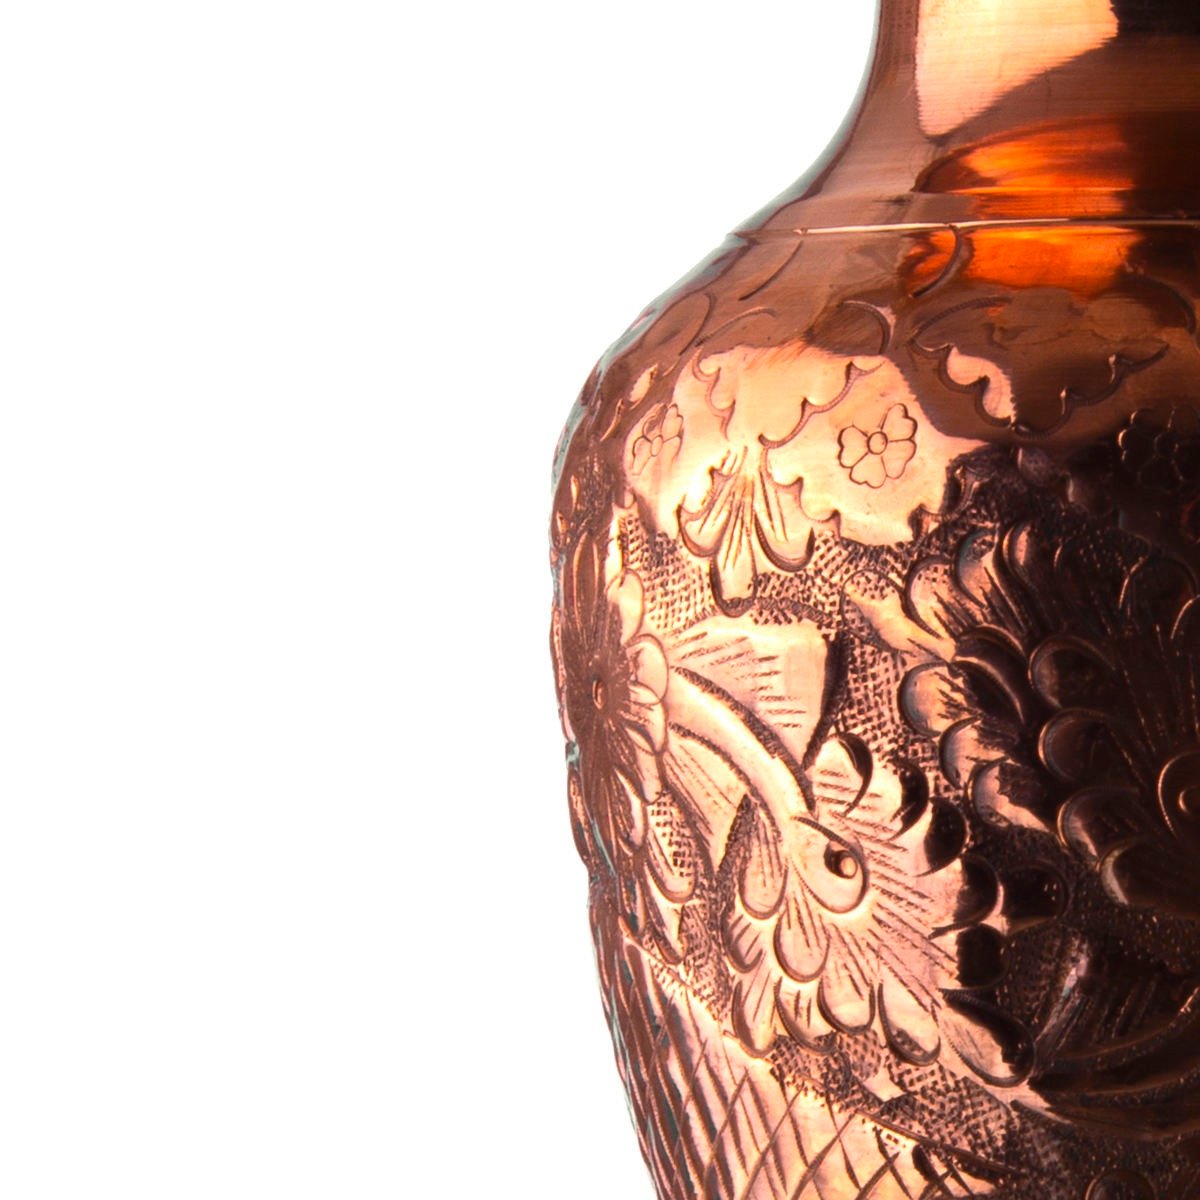 Handicraft Copper pot Flower and chicken design code 1442, cobre, cobre metálico, cobre persa